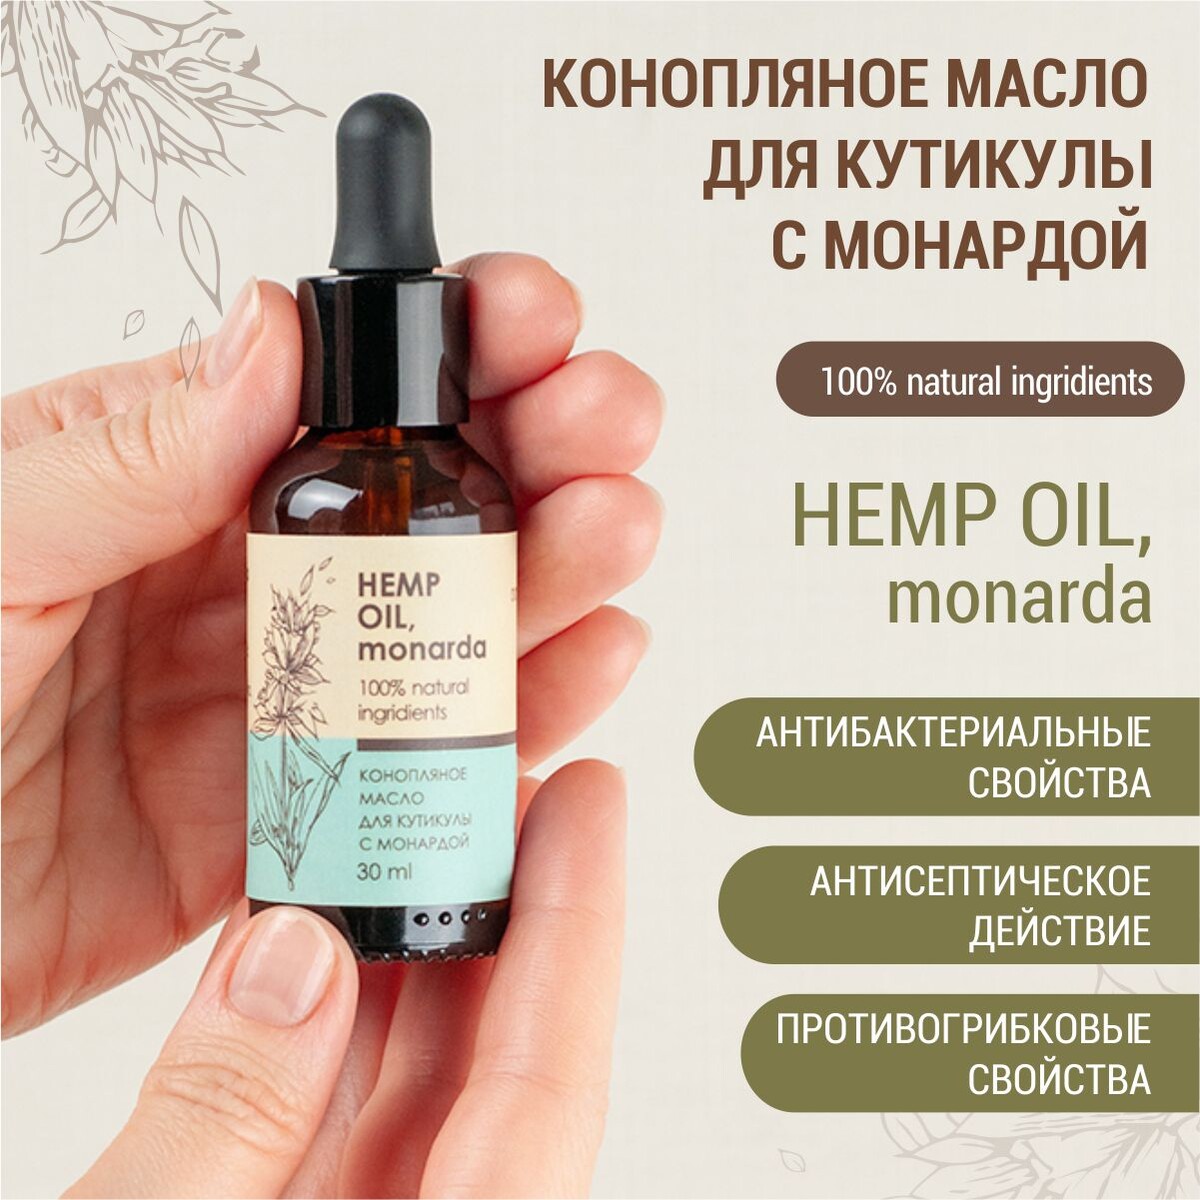 Конопляное масло для кутикулы с монардой (hemp oil, monarda)